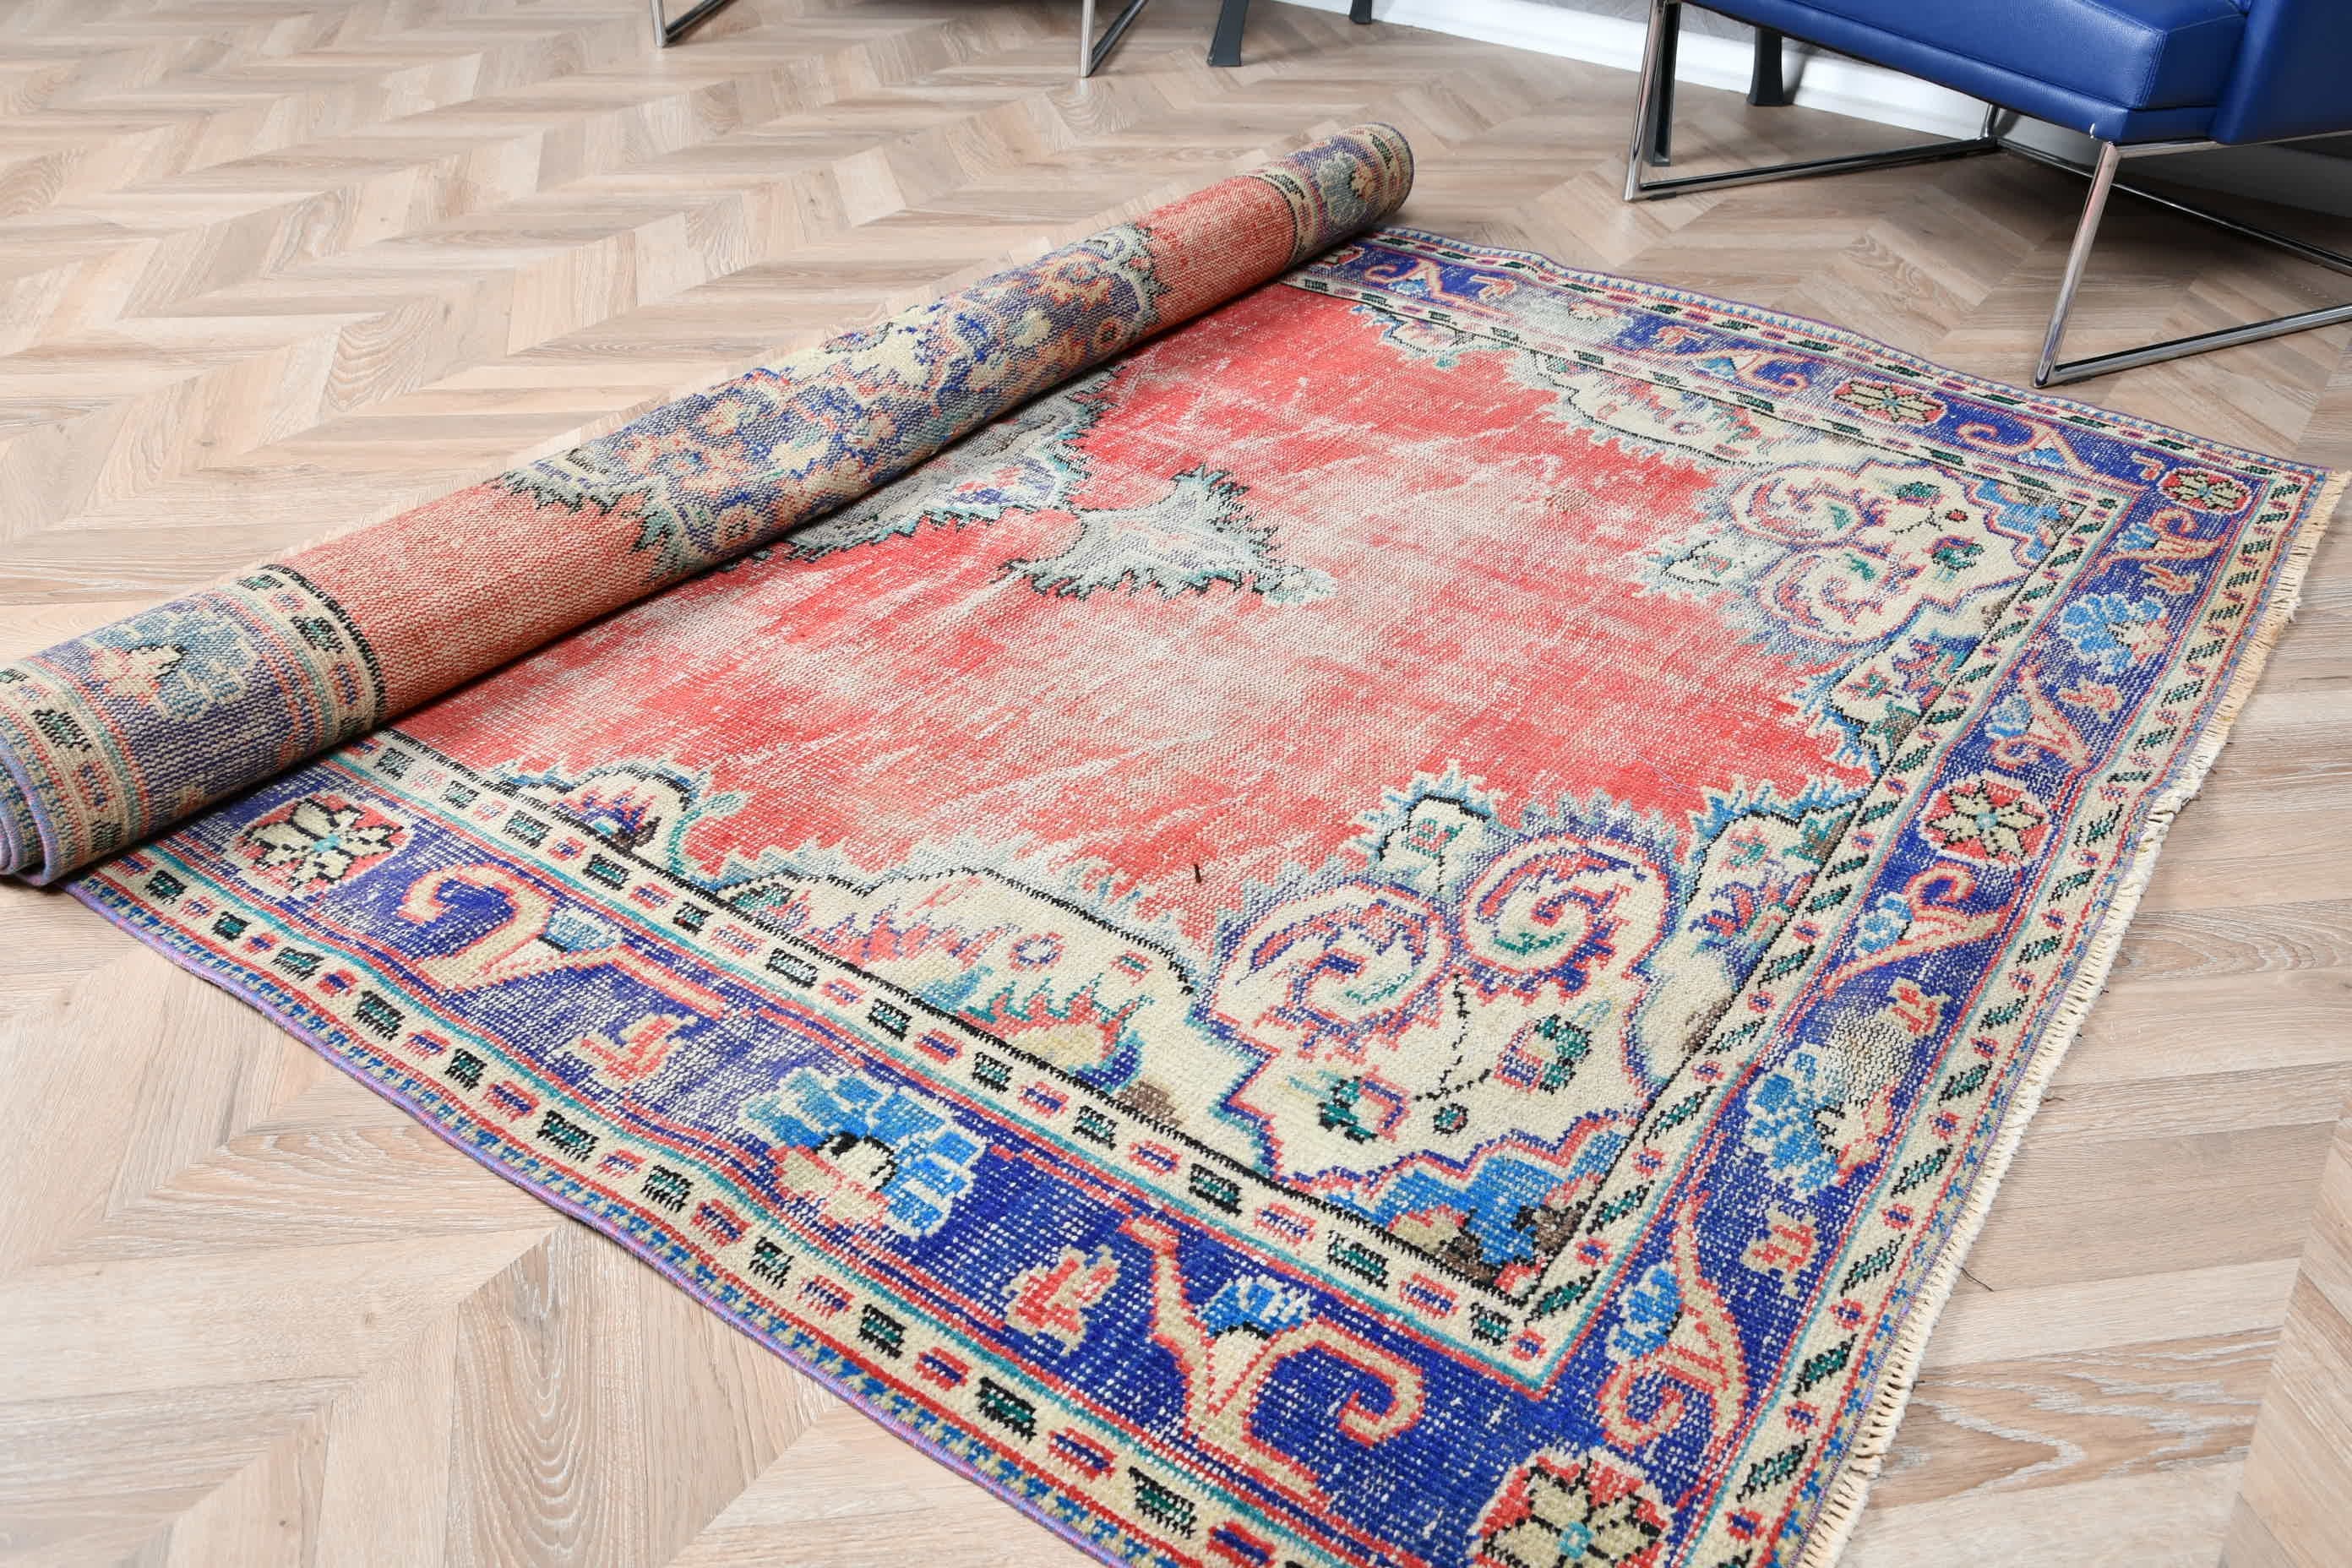 Turkish Rugs, Bedroom Rug, Dining Room Rugs, Vintage Rugs, 5.6x8.5 ft Large Rugs, Floor Rugs, Rugs for Bedroom, Cool Rug, Red Antique Rugs